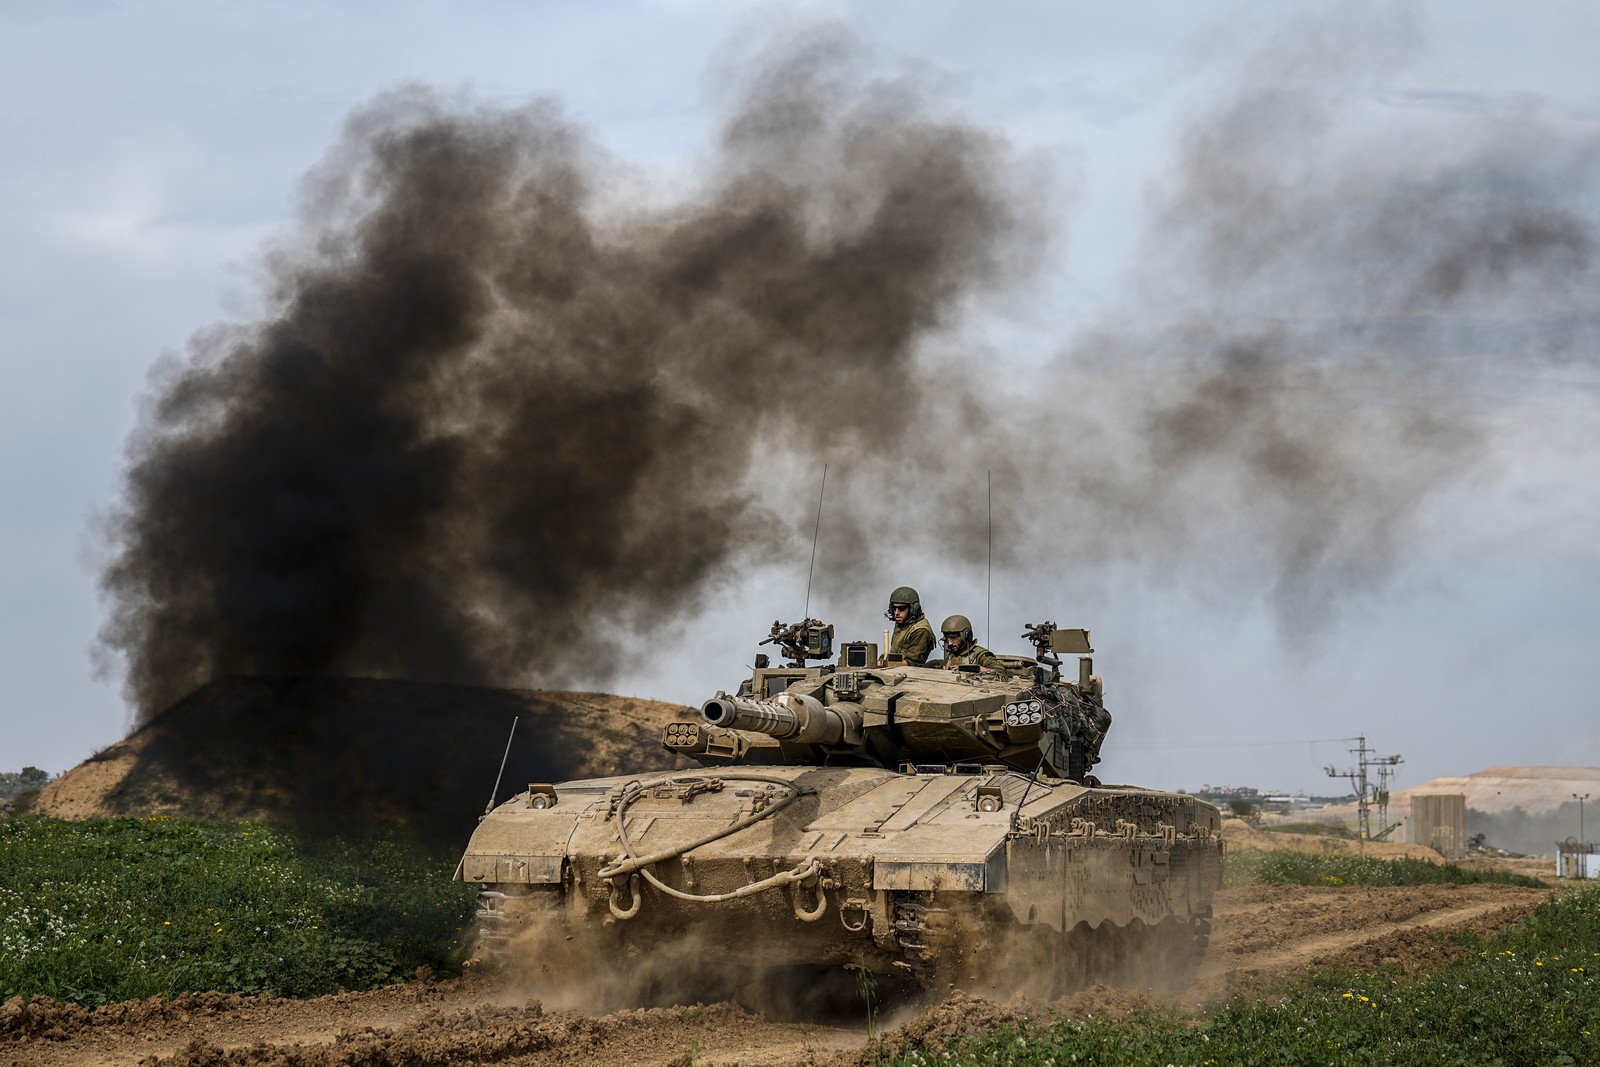 πολεμικό συμβούλιο ισραήλ: πλήγμα στο ιράν ακόμα και σήμερα, χωρίς γενικευμένο πόλεμο